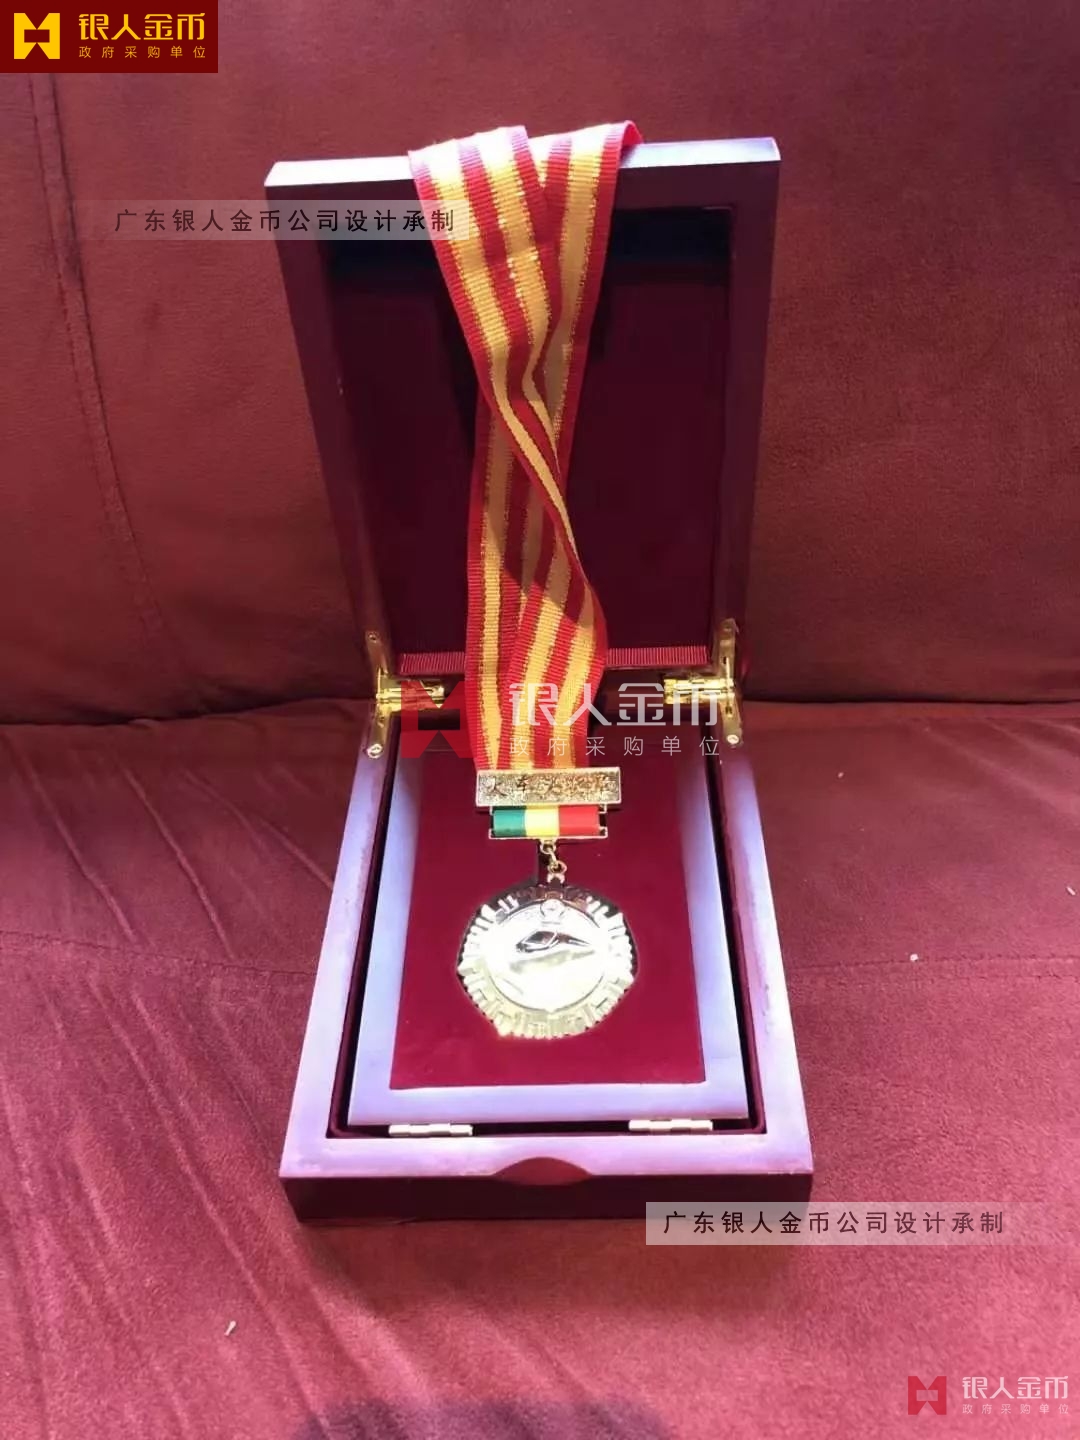 中华全国铁路总工会火车头奖章、火车头奖杯、获奖荣誉证书（图）